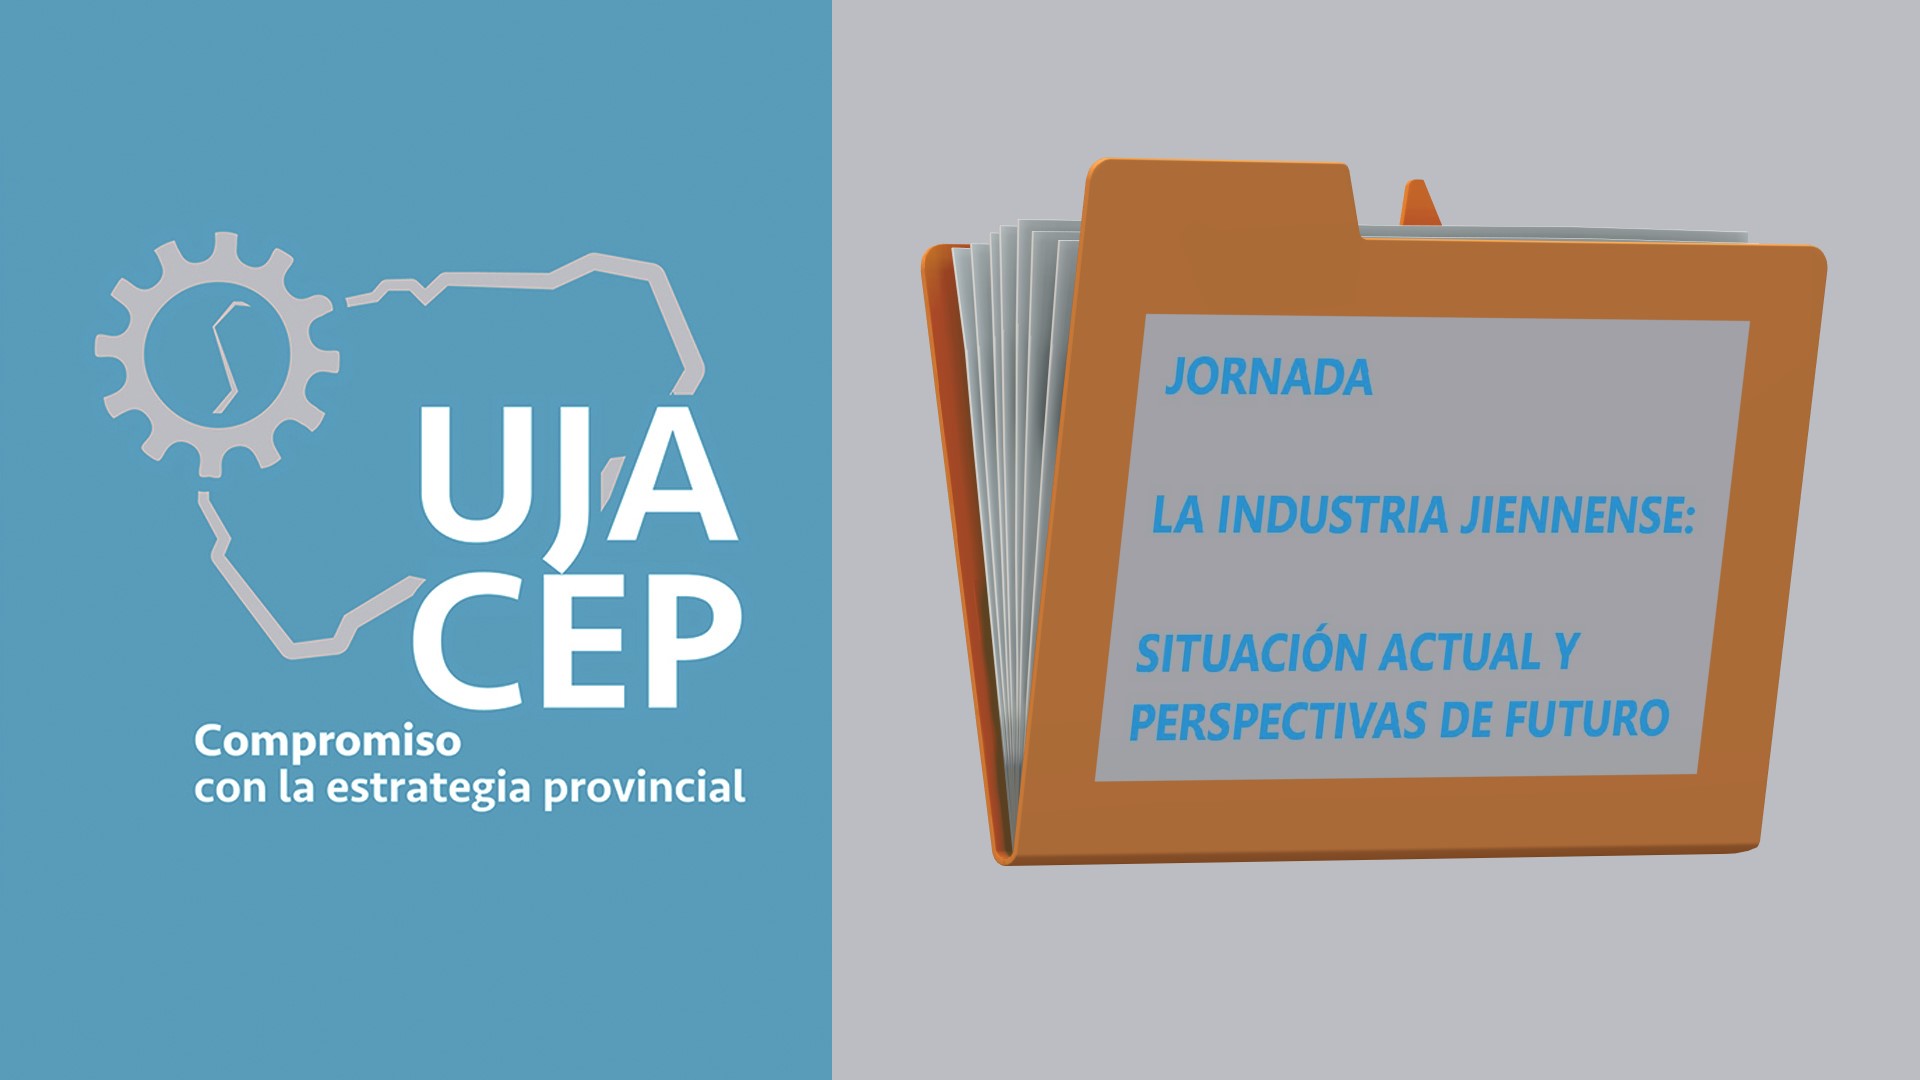 Jornada “La industria jiennense: situación actual y perspectivas de futuro”